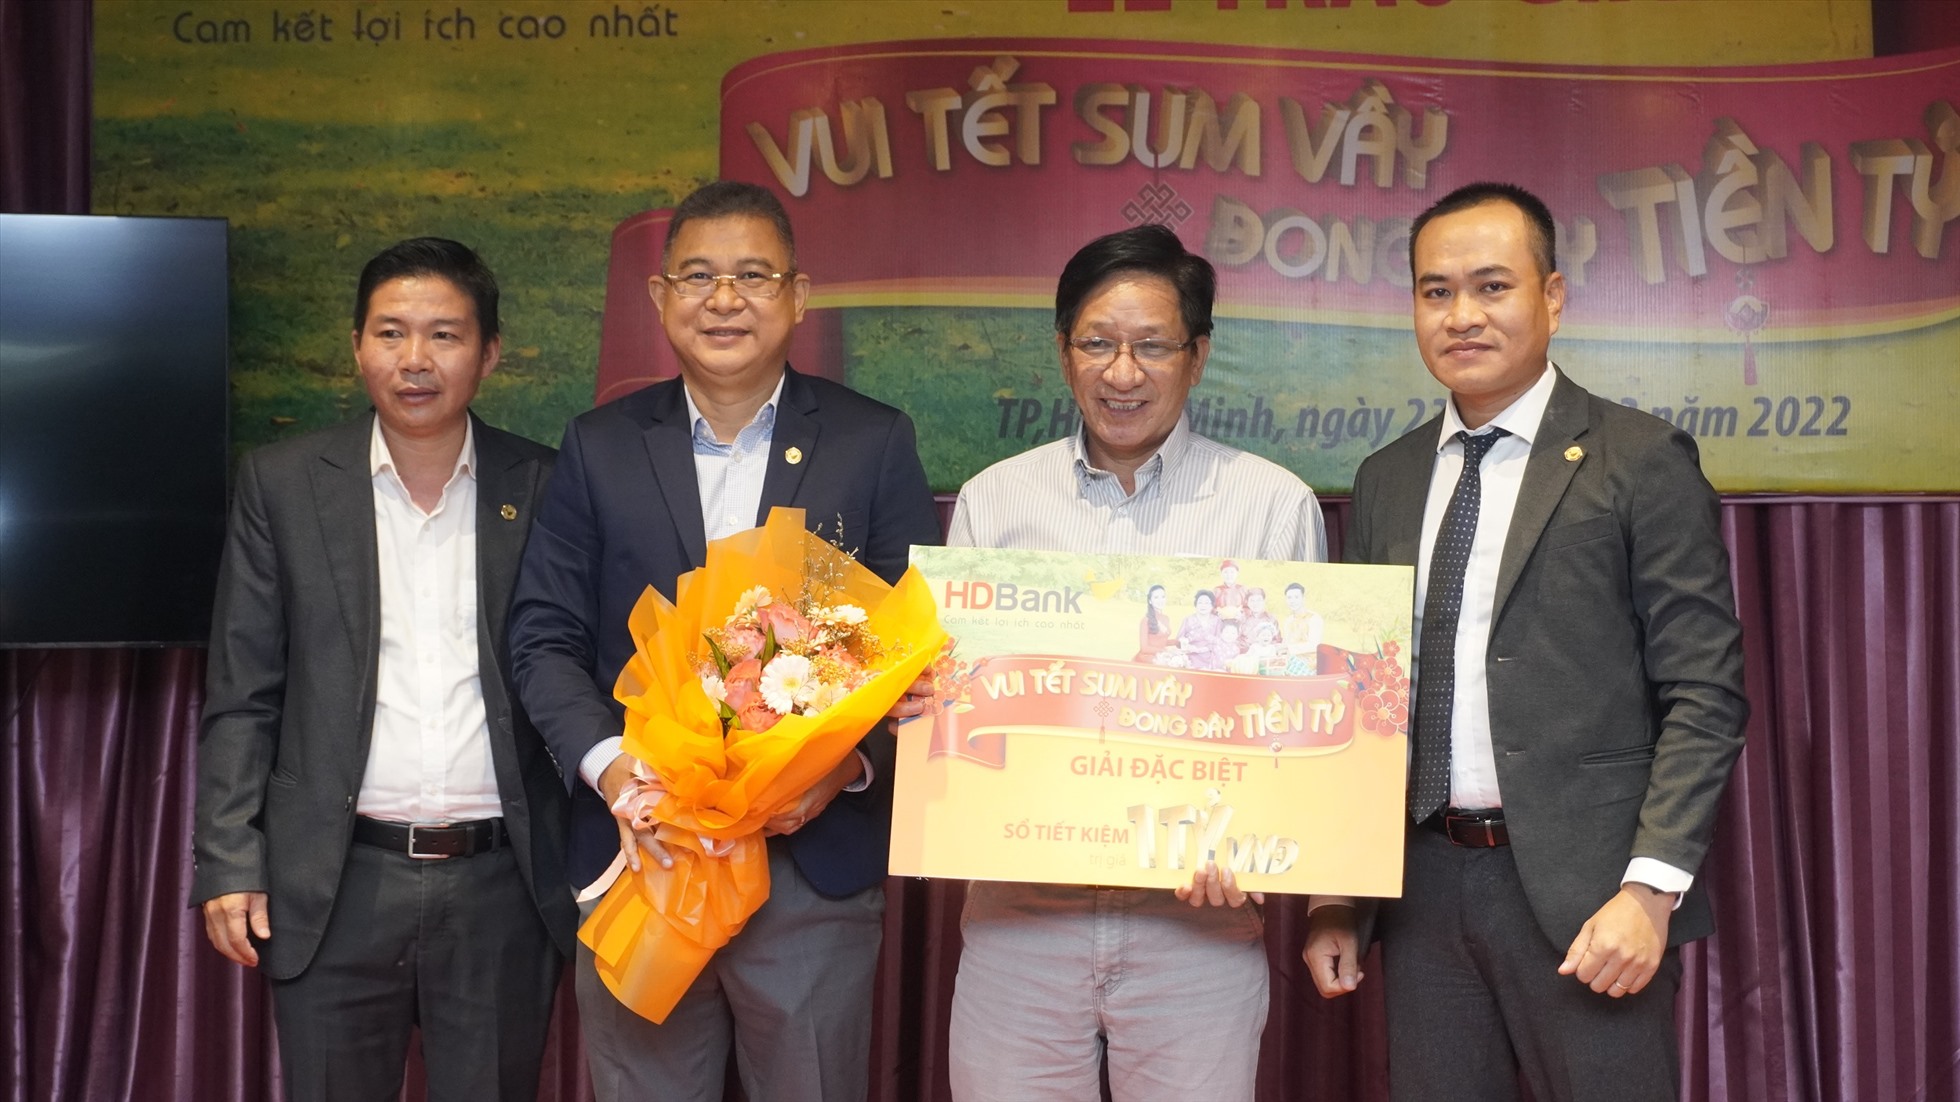 Đại diện lãnh đạo HDBank trao giải đặc biệt - 1 tỉ đồng cho khách hàng Nguyễn Đình Đạo. Nguồn: HDBank